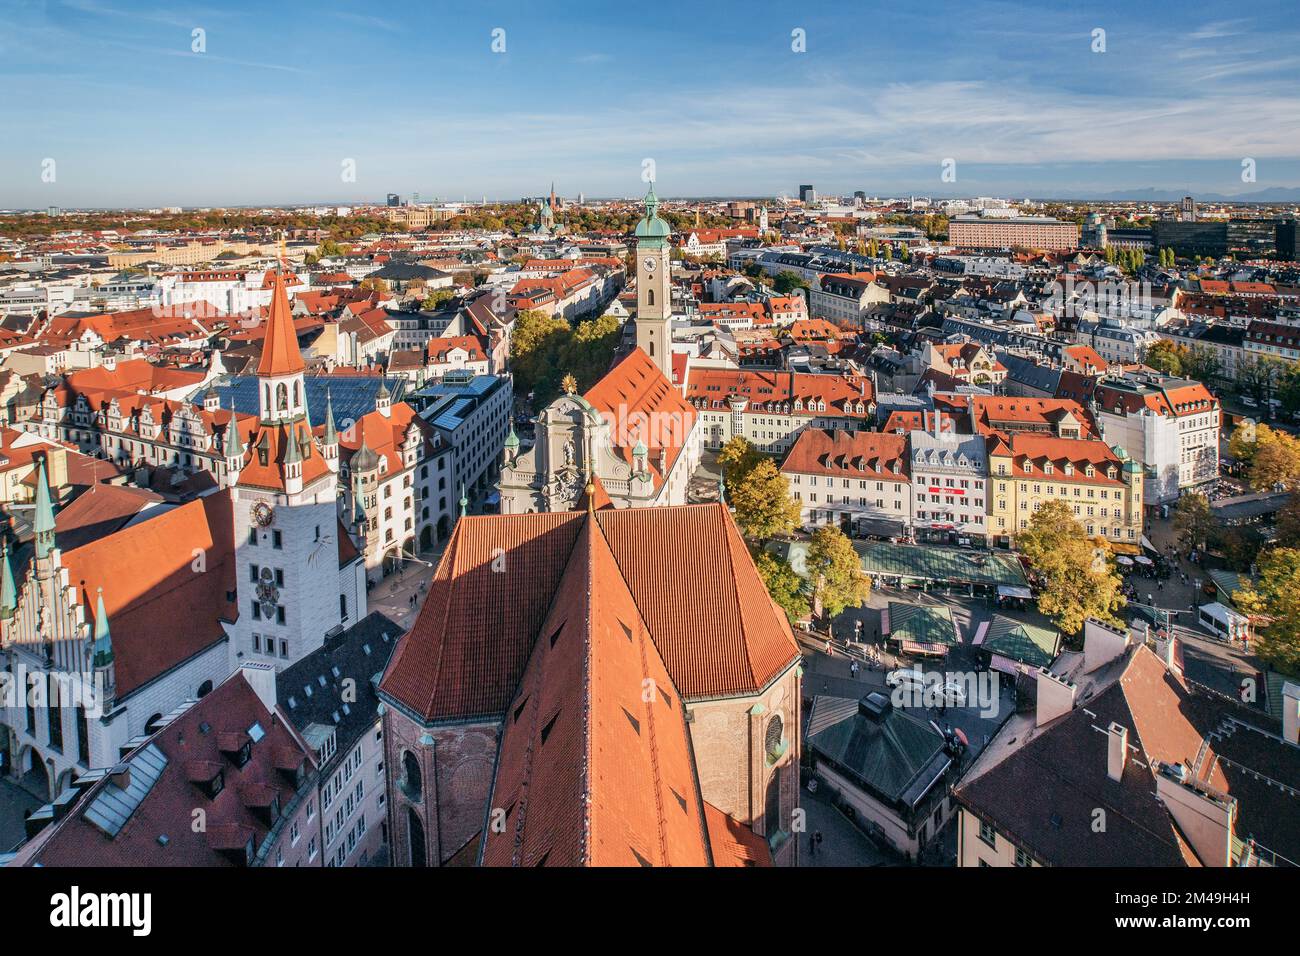 Blick auf die Altstadt mit Altstadthaus und Heiliger Geist, München, Oberbayern, Bayern, Deutschland Stockfoto